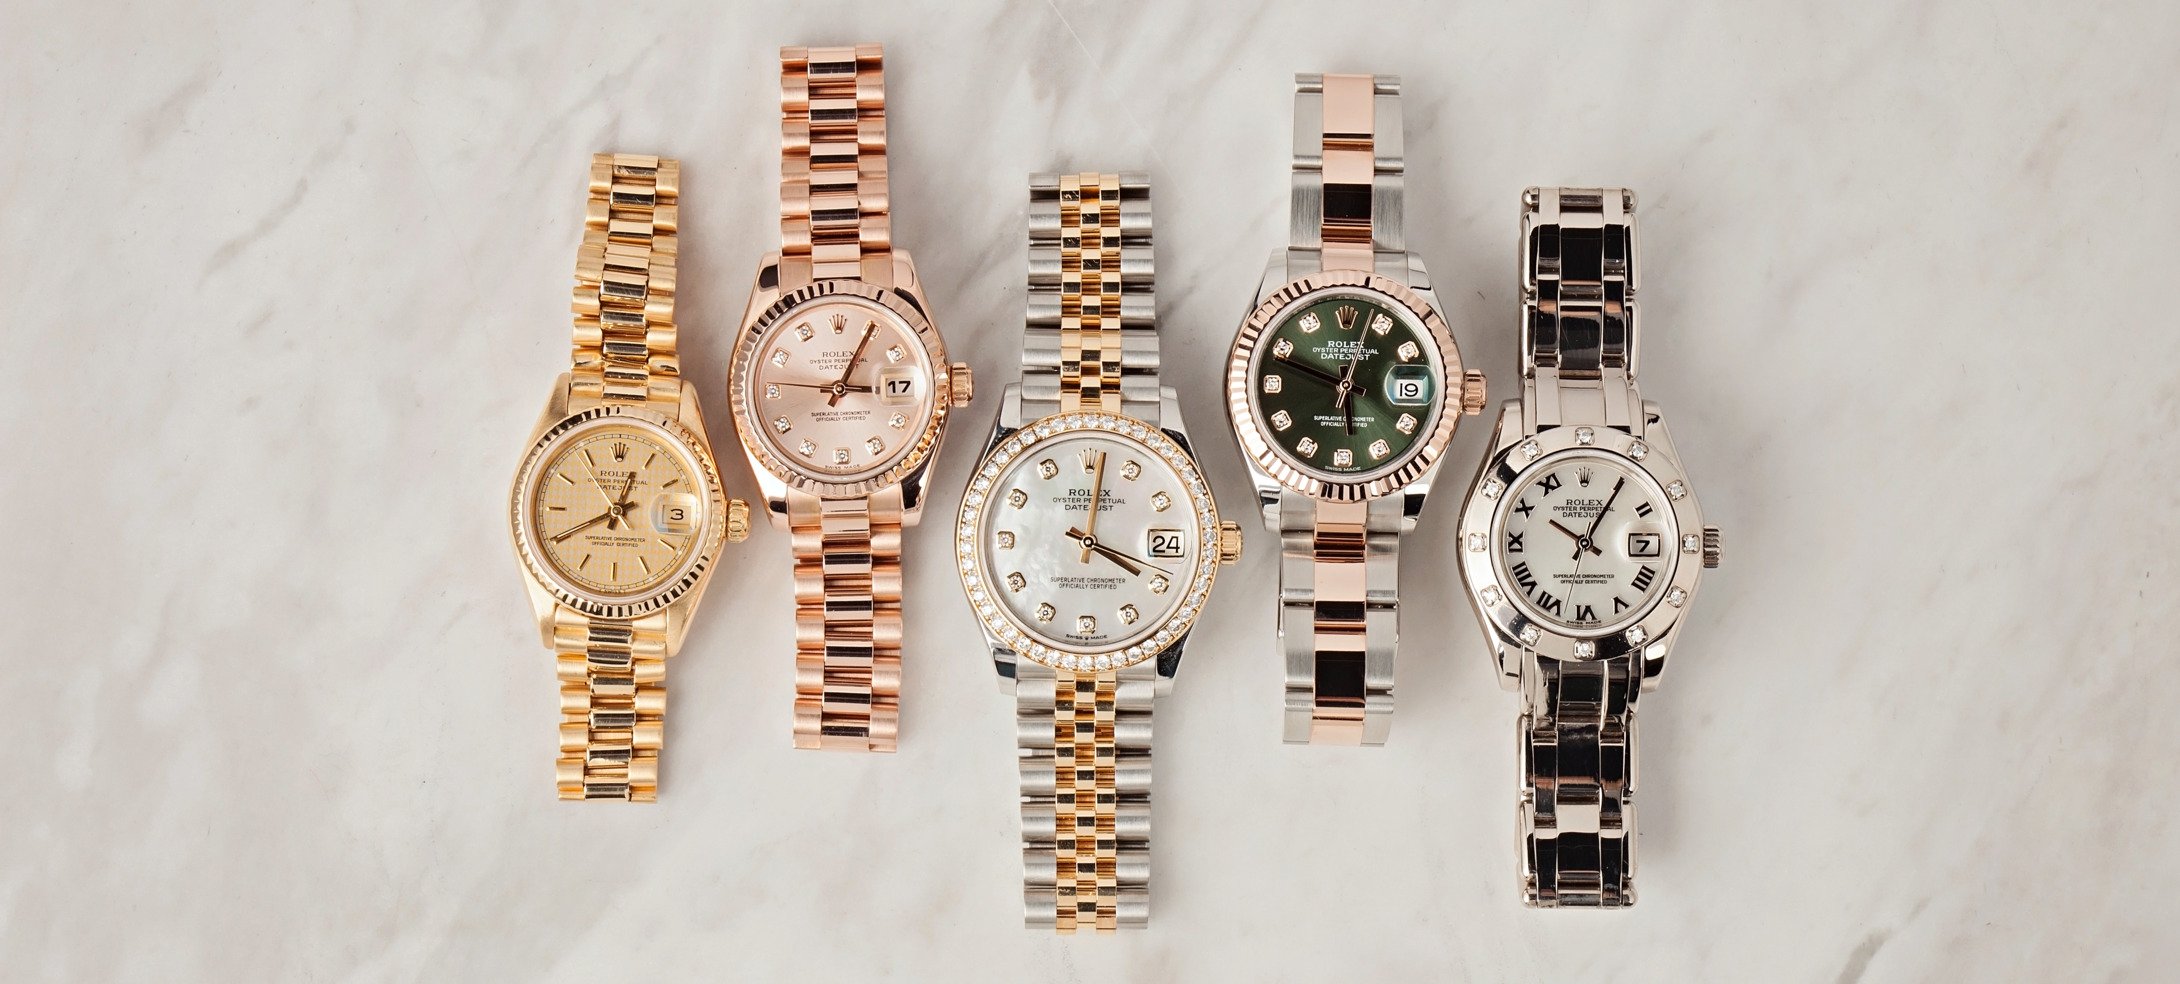 Watches  Rolex watches women, Rolex, Gold watches women